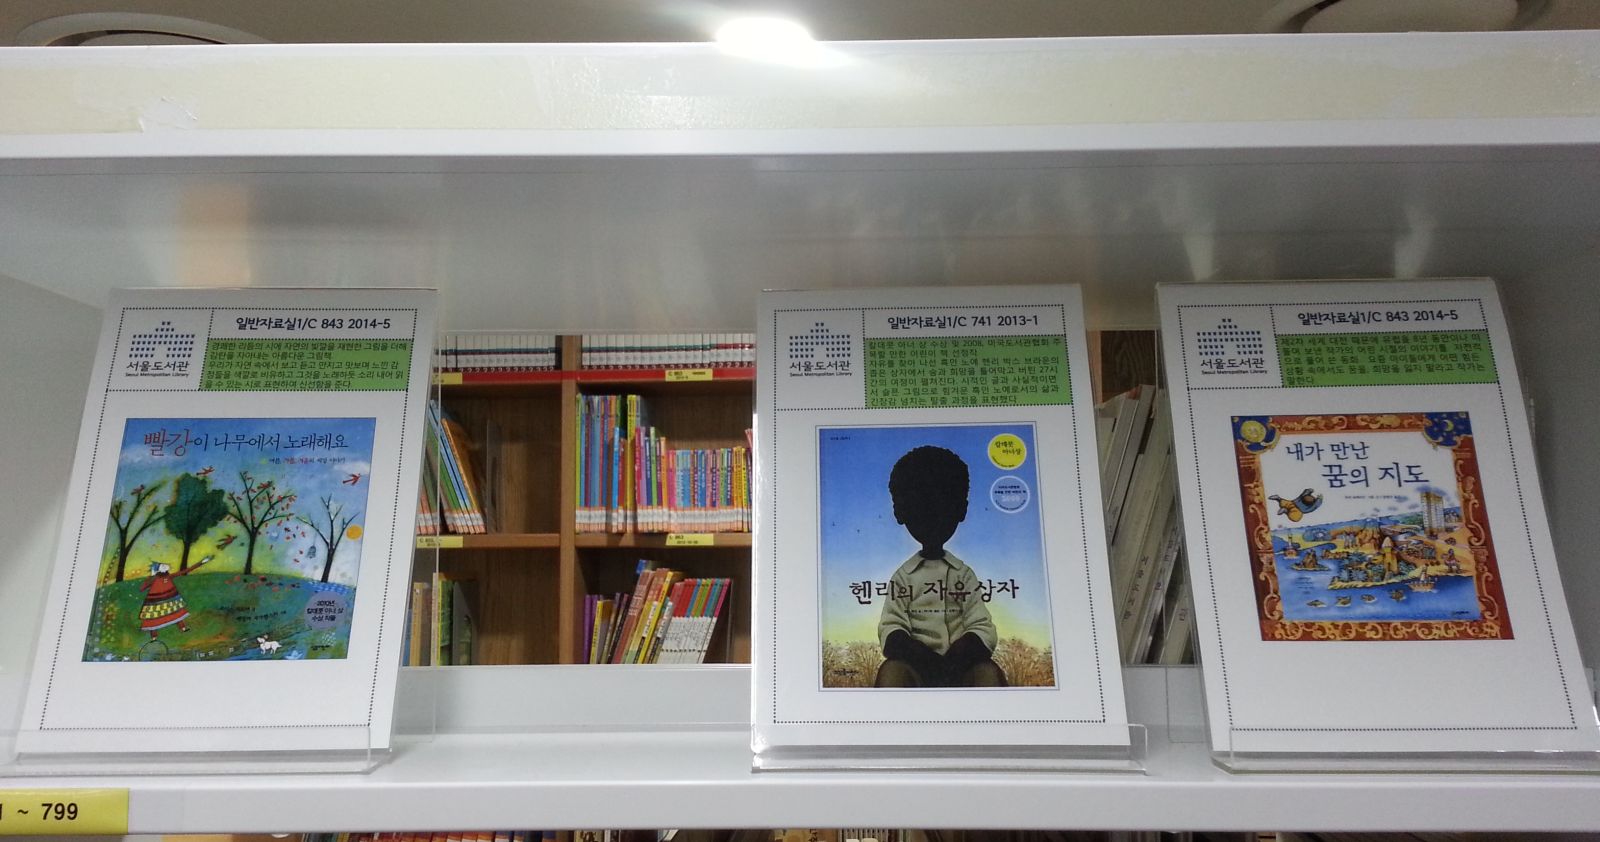 [전시] 서울도서관 칼데콧수상작 소장도서목록 전시 포스터